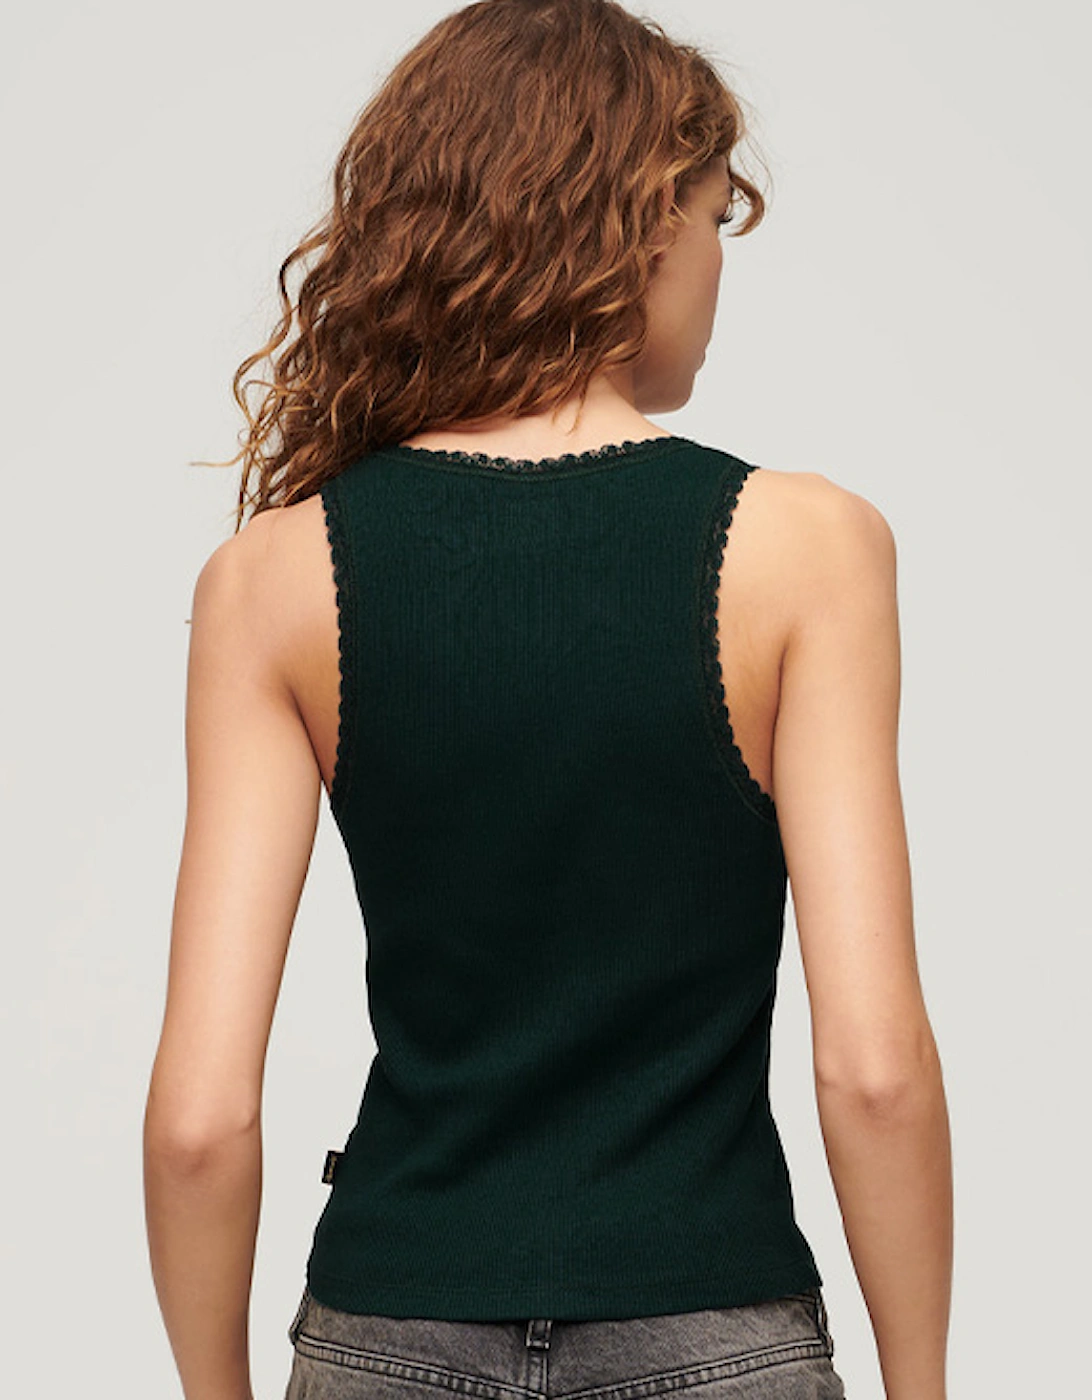 Women's Vintage Lace Trim Vest Dark Pine Green